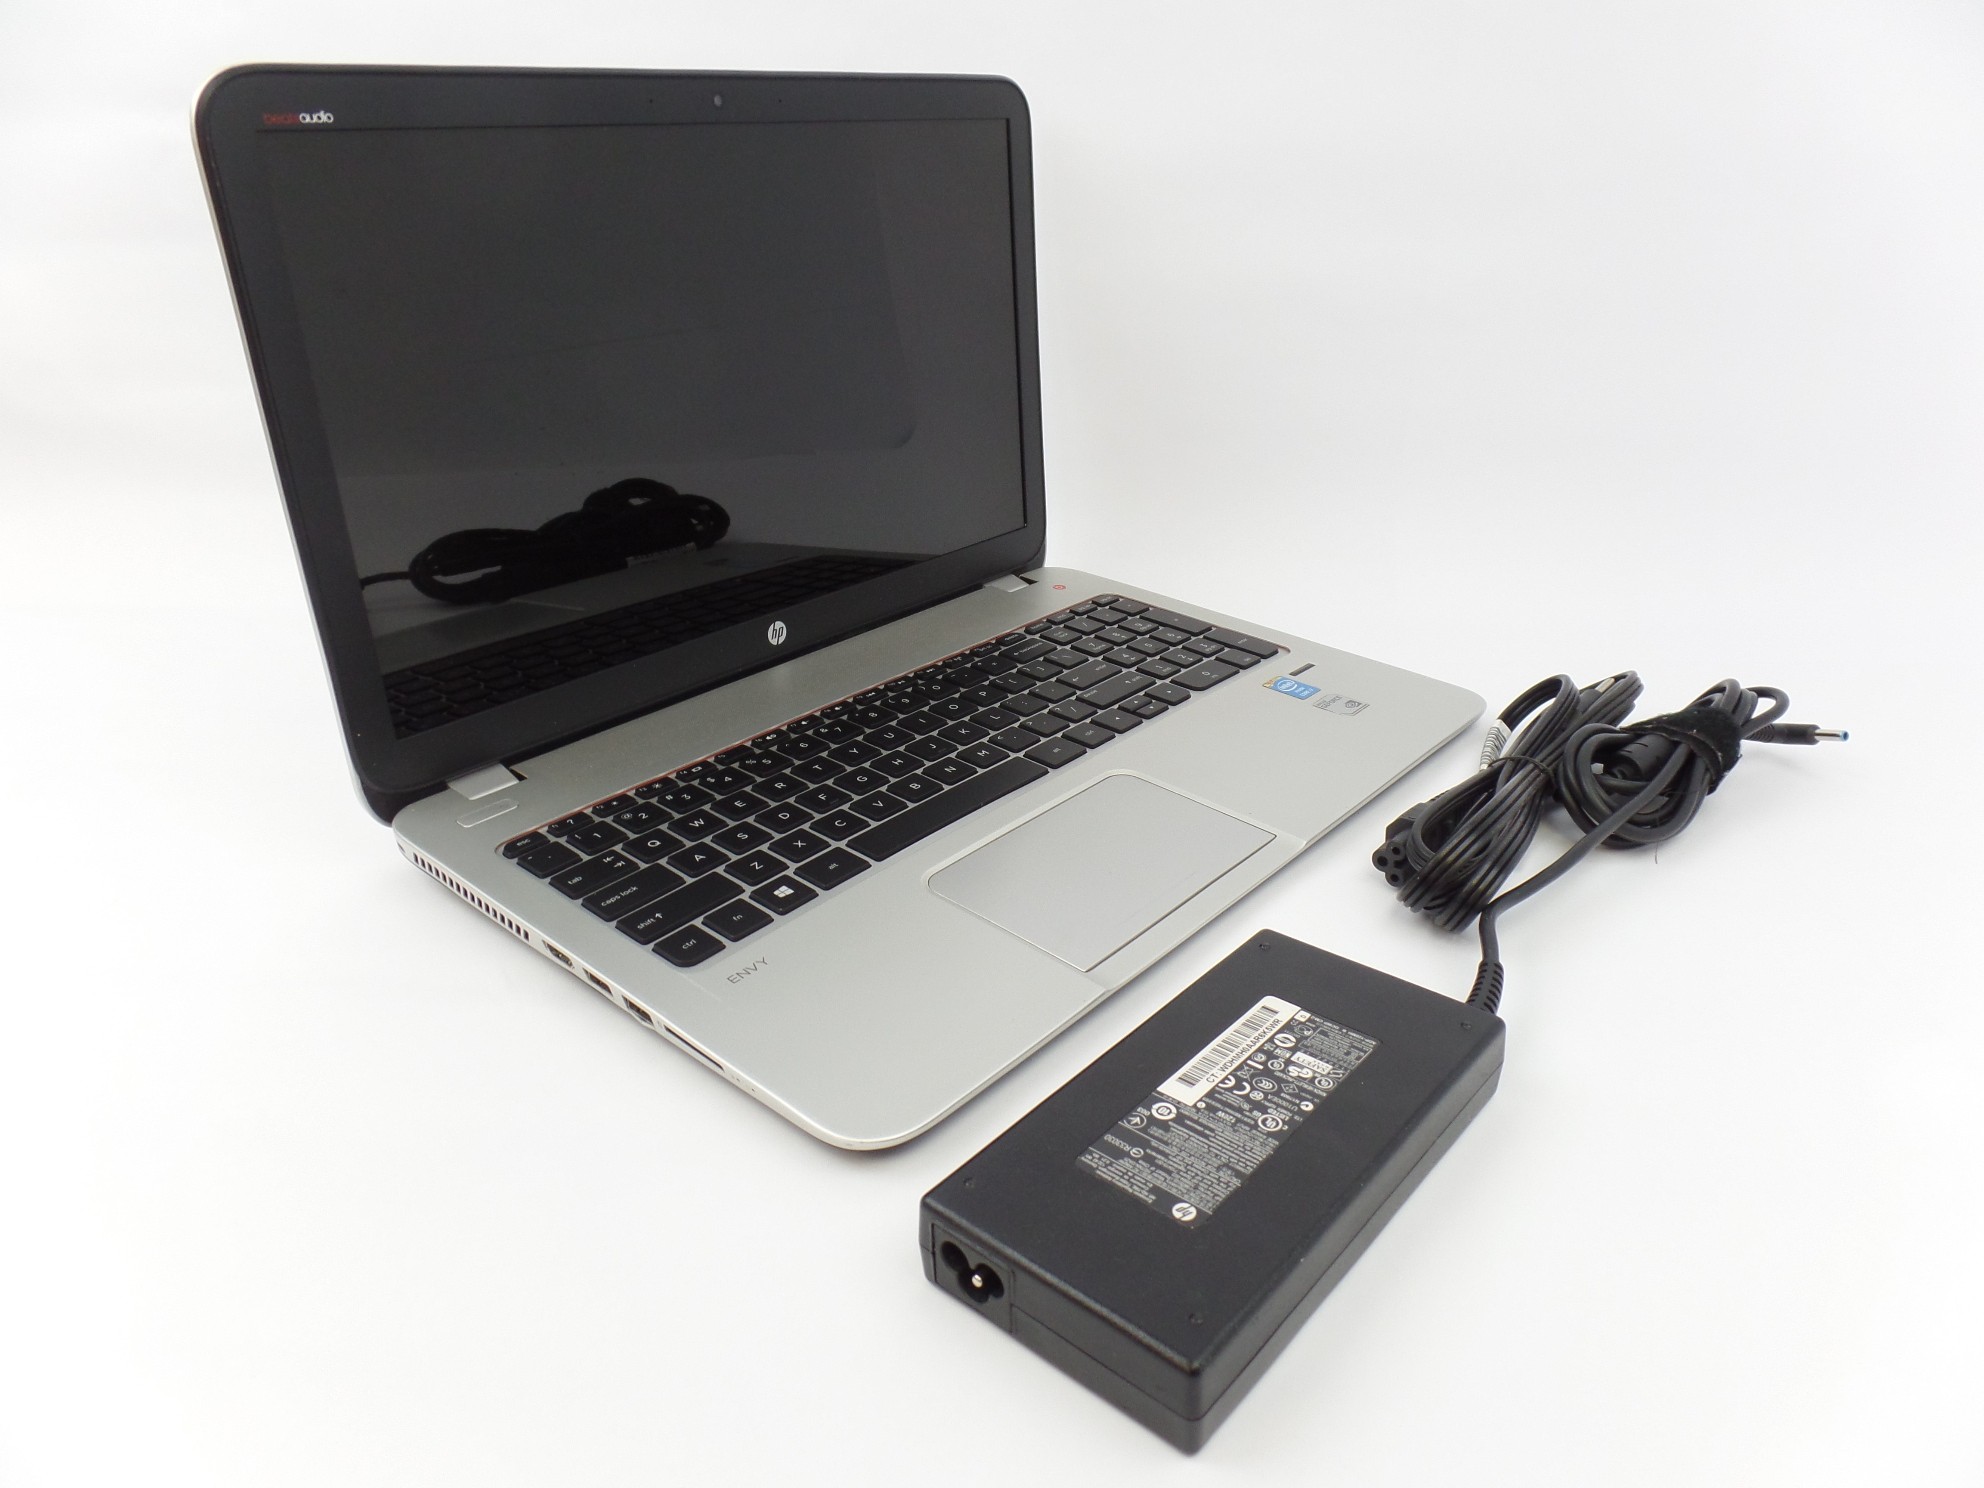 HP ENVY 15t-j100 15.6" FHD i7-4700MQ 2.4GHz 8GB 1TB GF GT740M W10H Laptop U